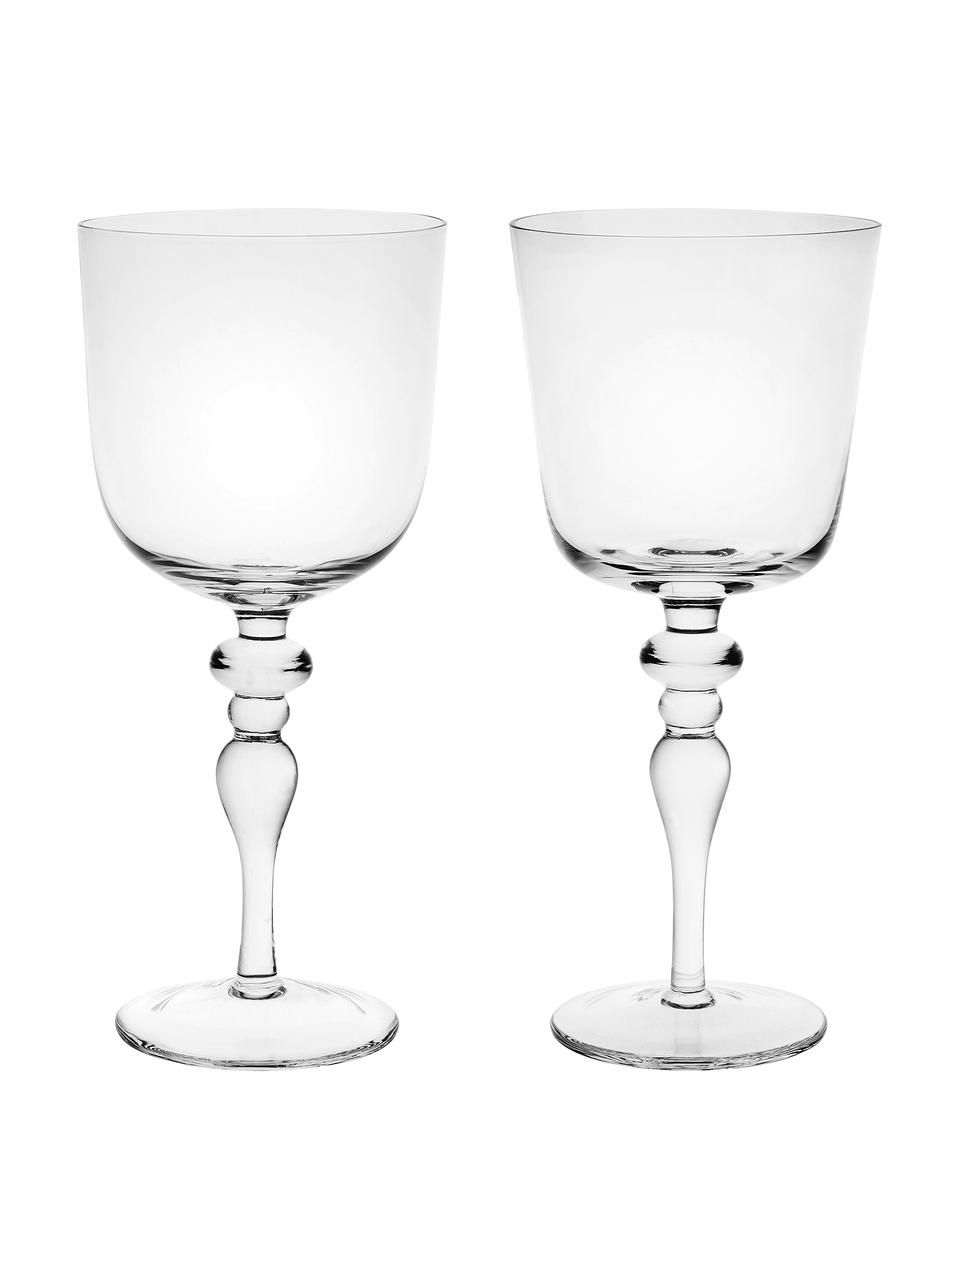 Set 6 bicchieri vino in vetro soffiato in diverse forme Desigual, Vetro soffiato, Trasparente, Ø 8 x Alt. 20 cm, 200 ml